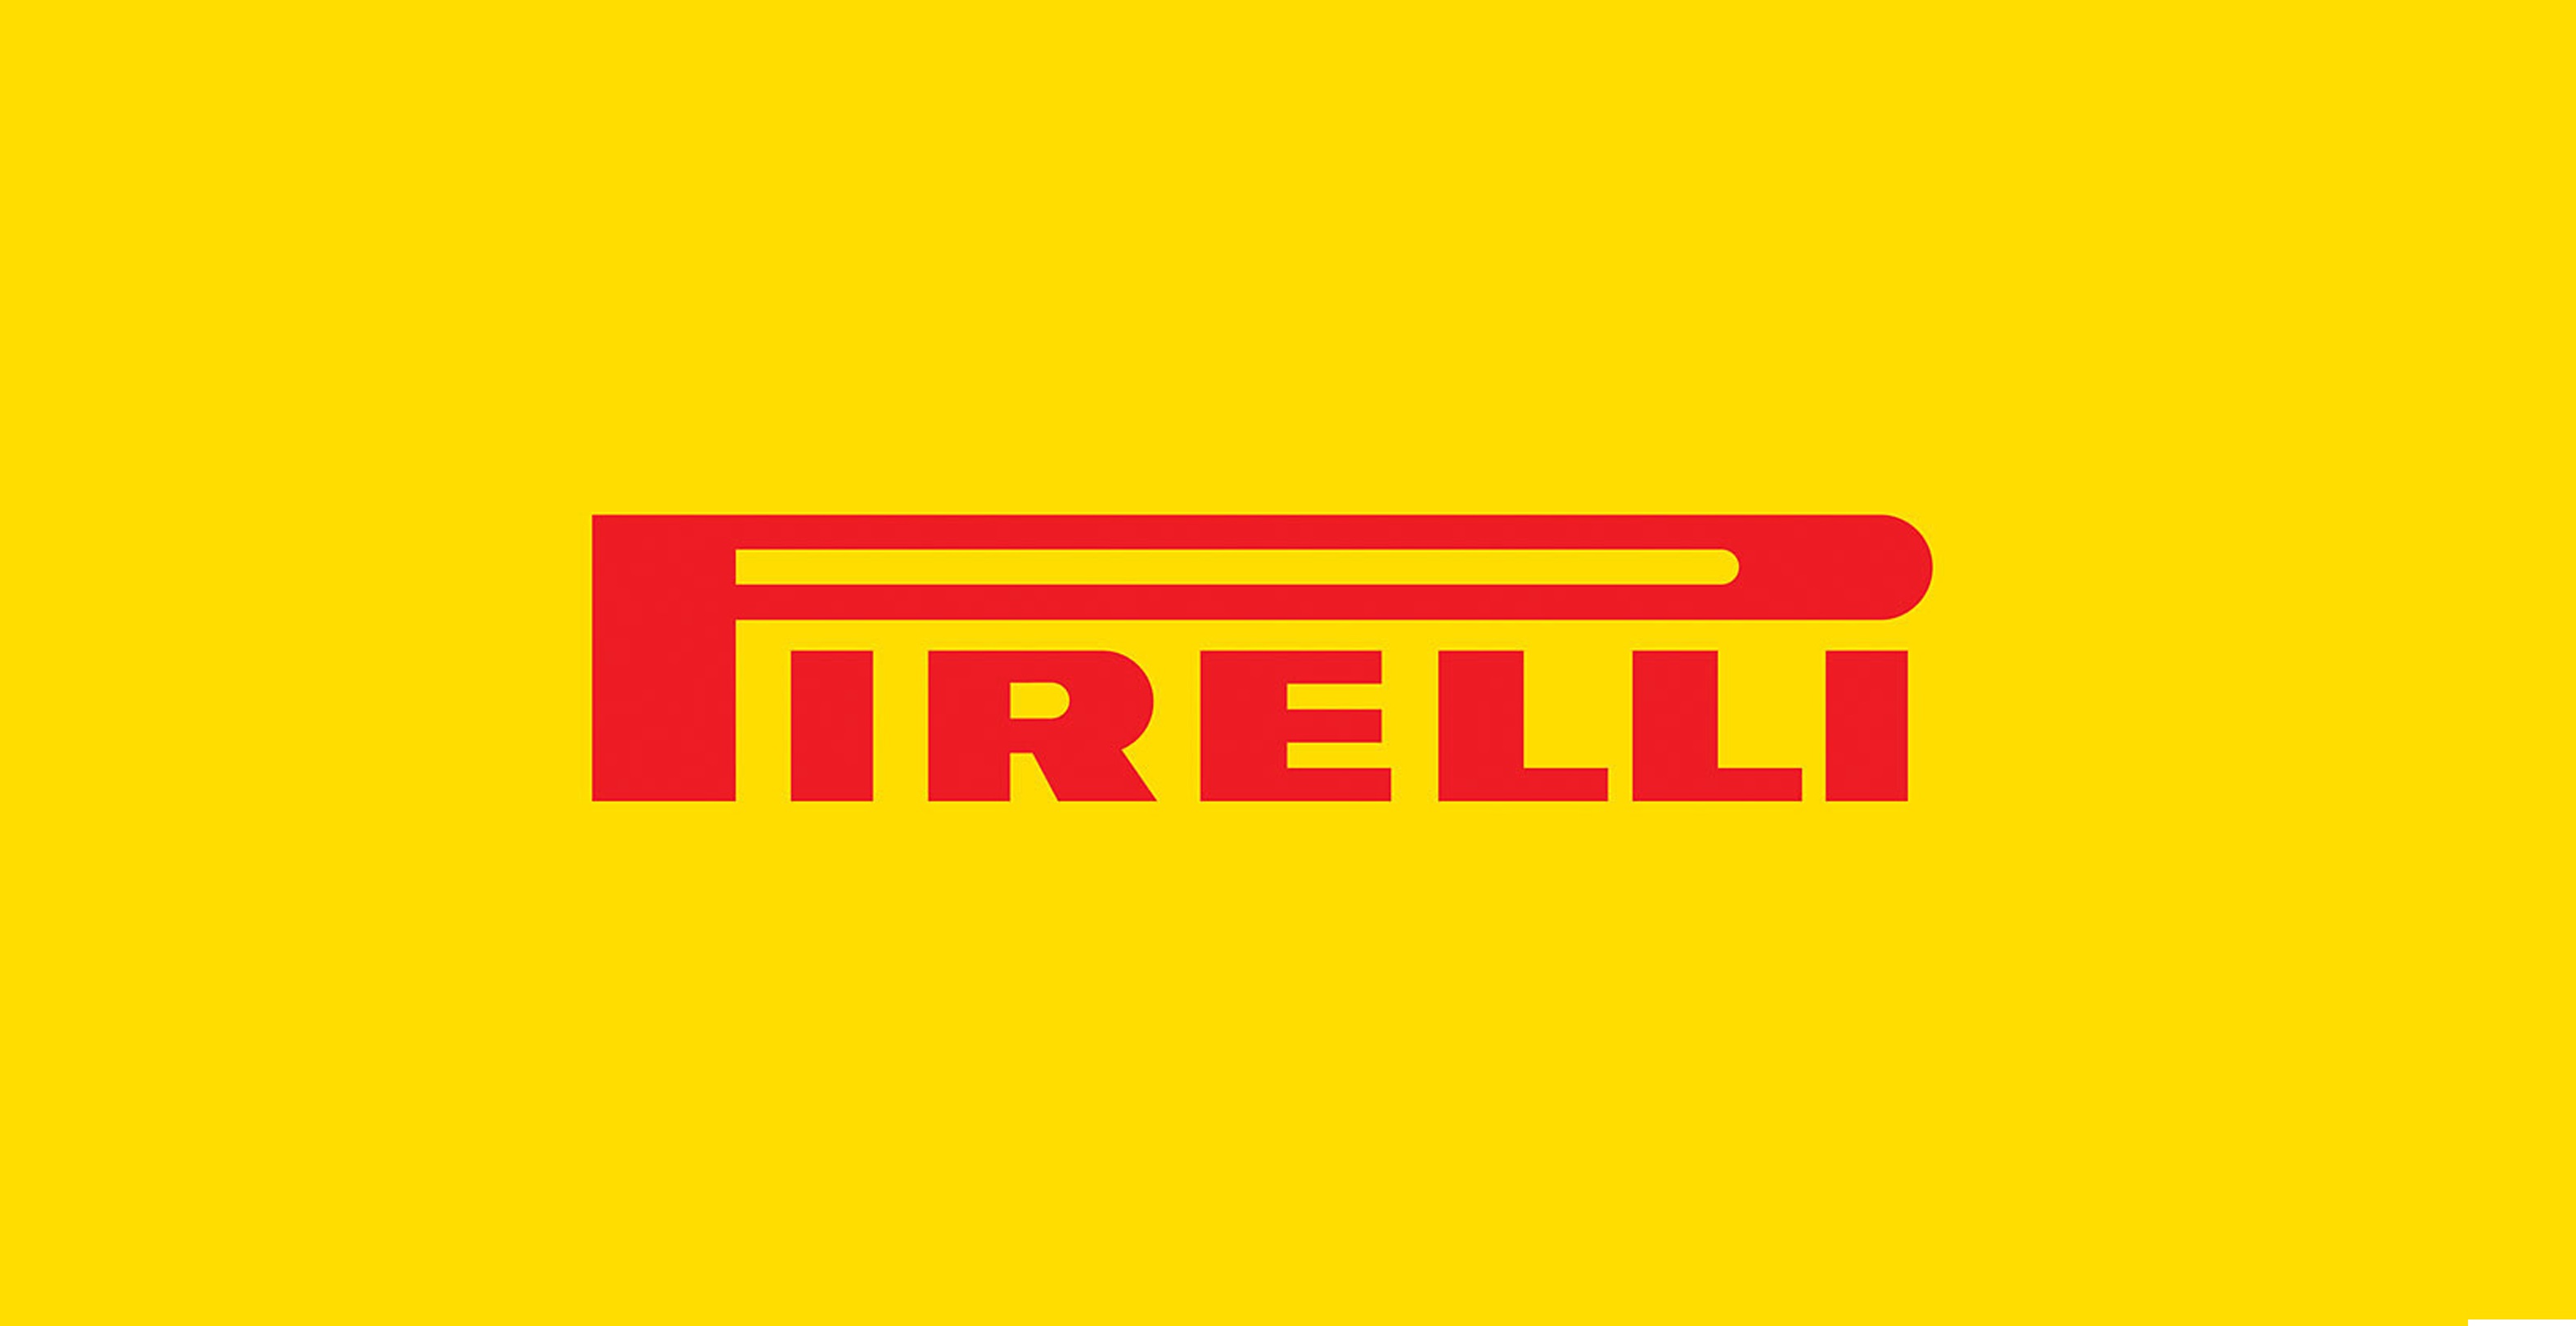 Pirelli escolhe MullenLowe come sua nova agência de publicidade